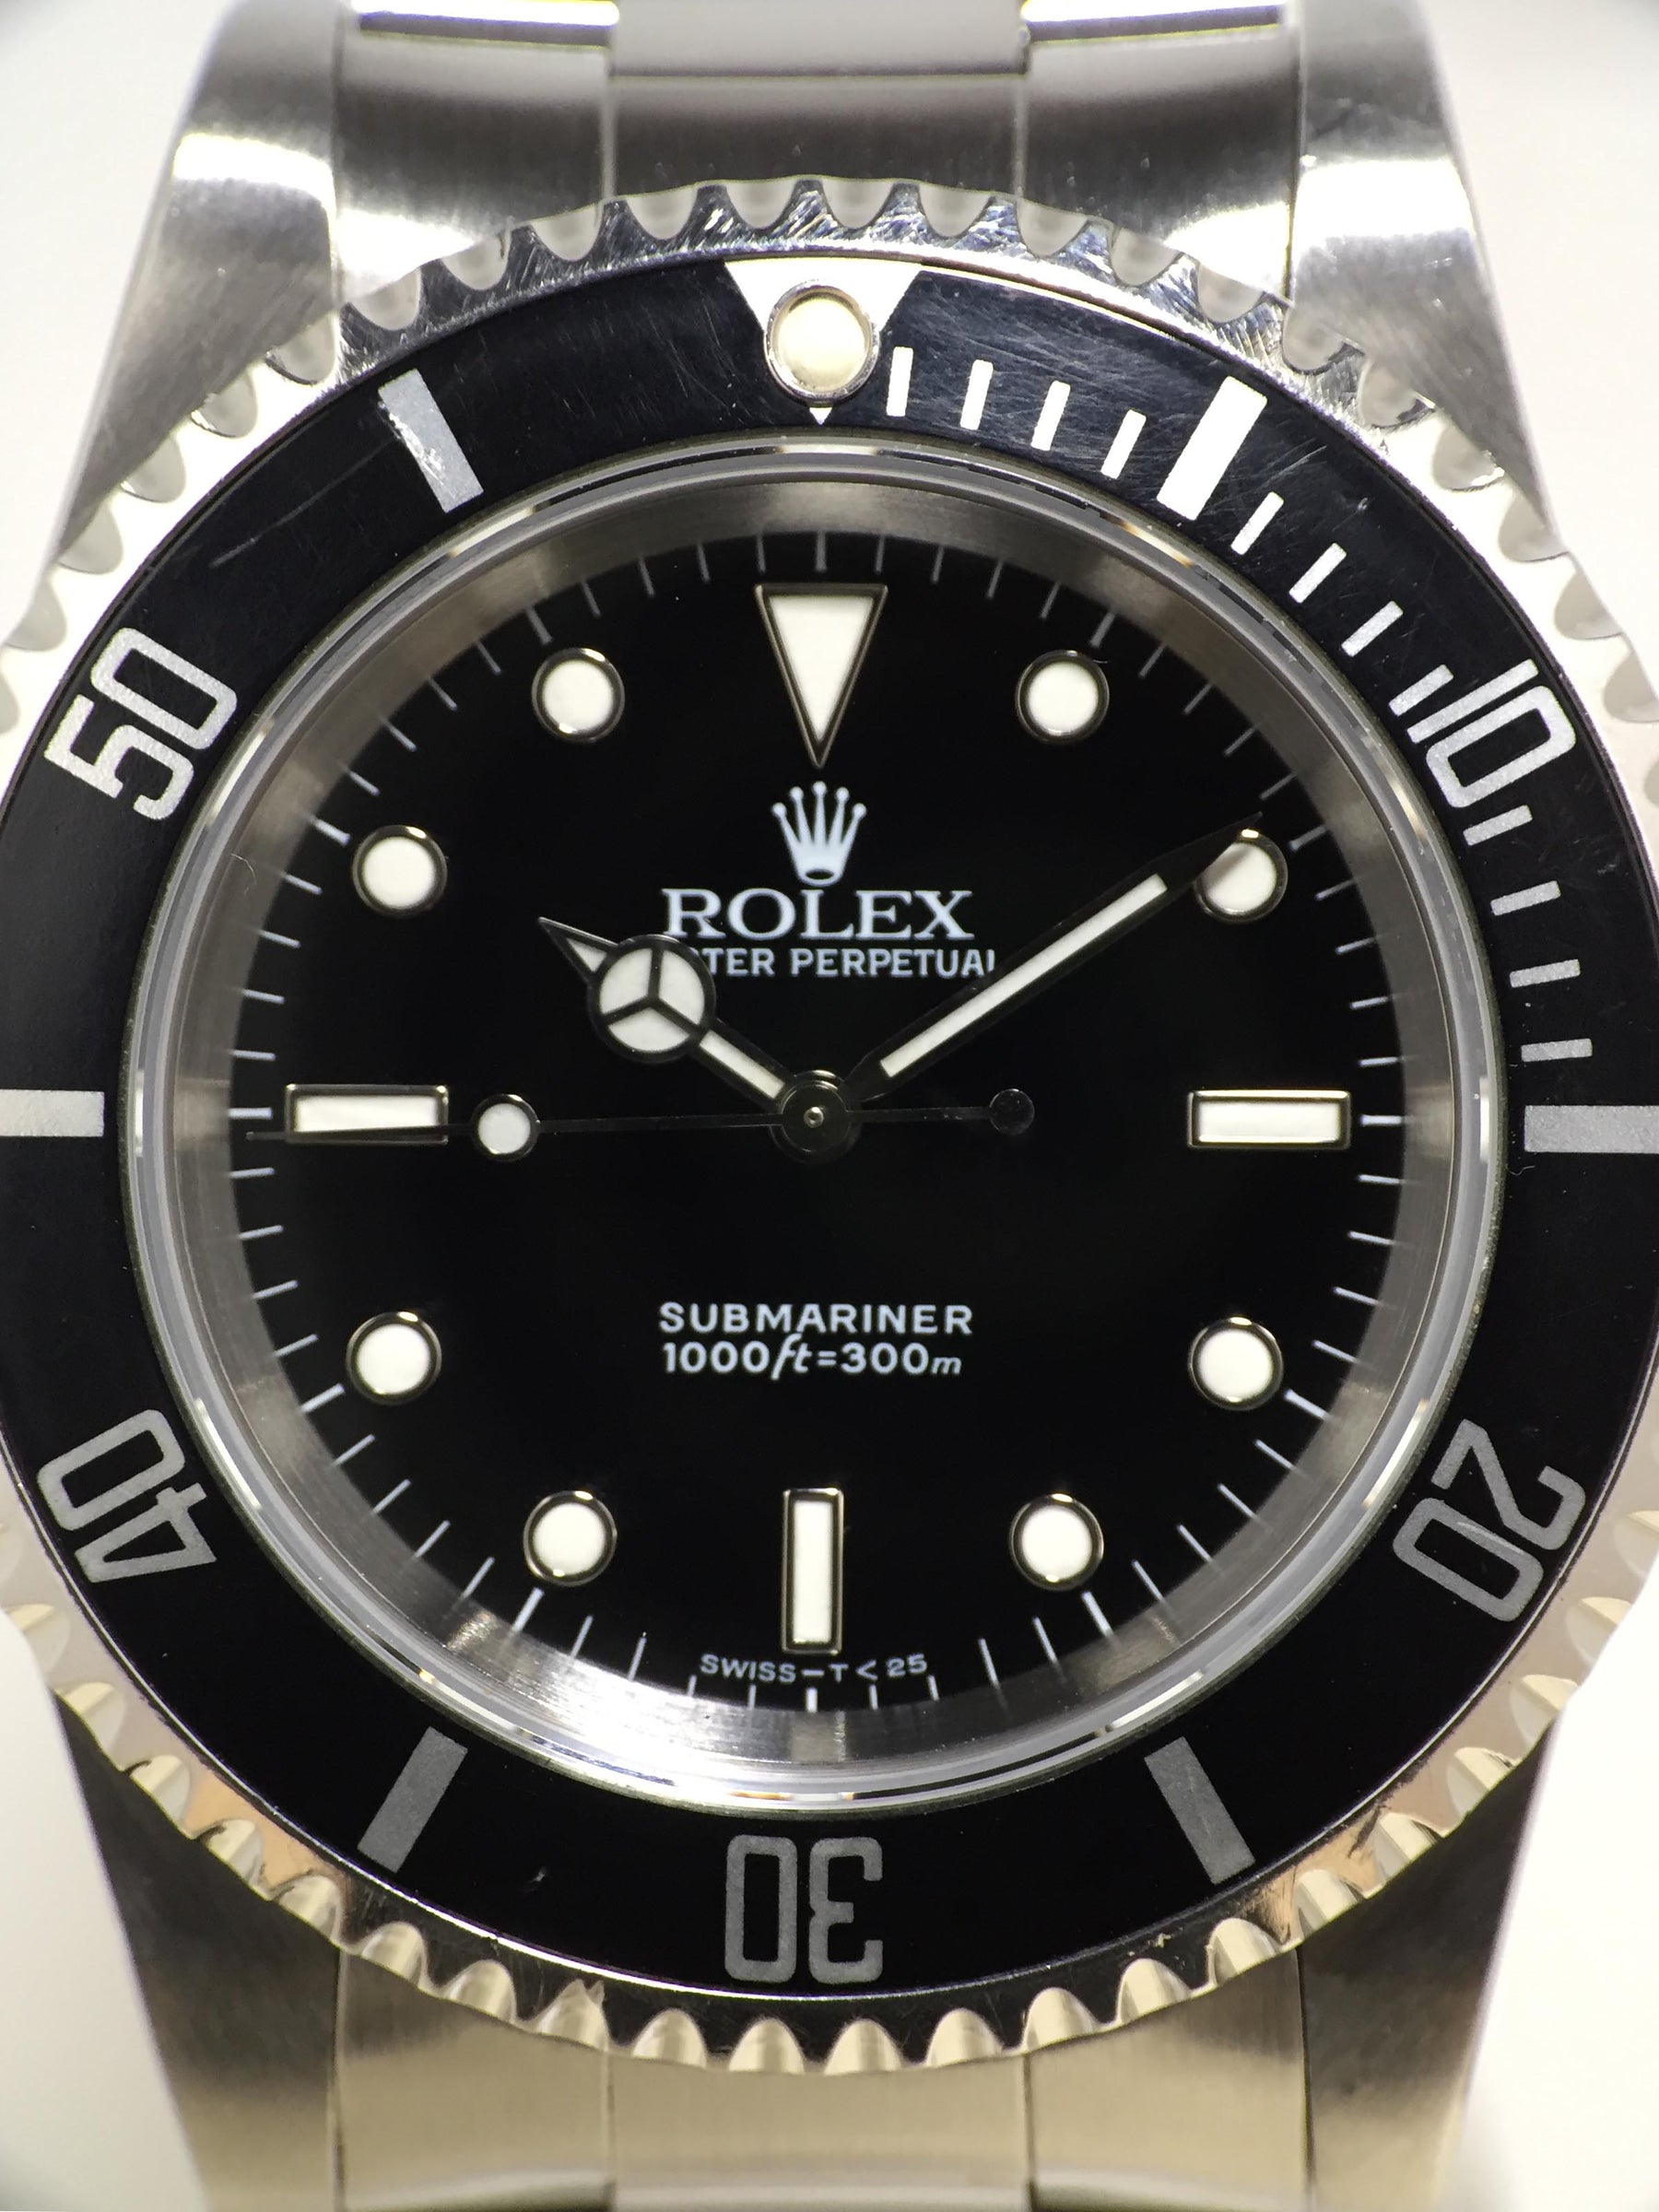 1991 Rolex Submariner Tritium Dial Ref. 14060 (with Papers)